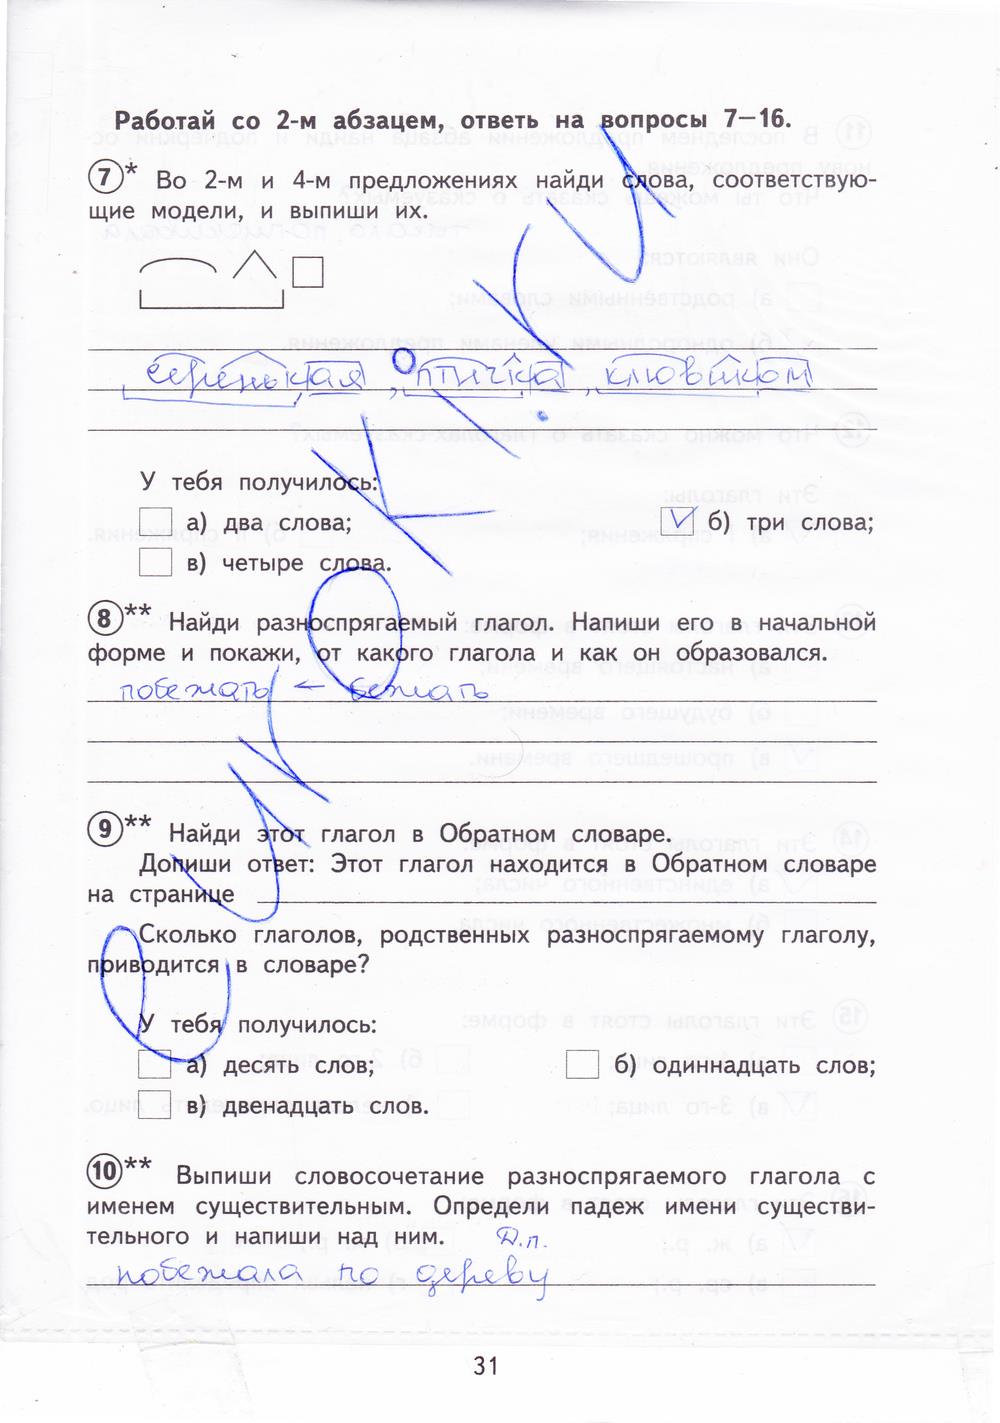 гдз 4 класс тетрадь для проверочных работ страница 31 русский язык Лаврова